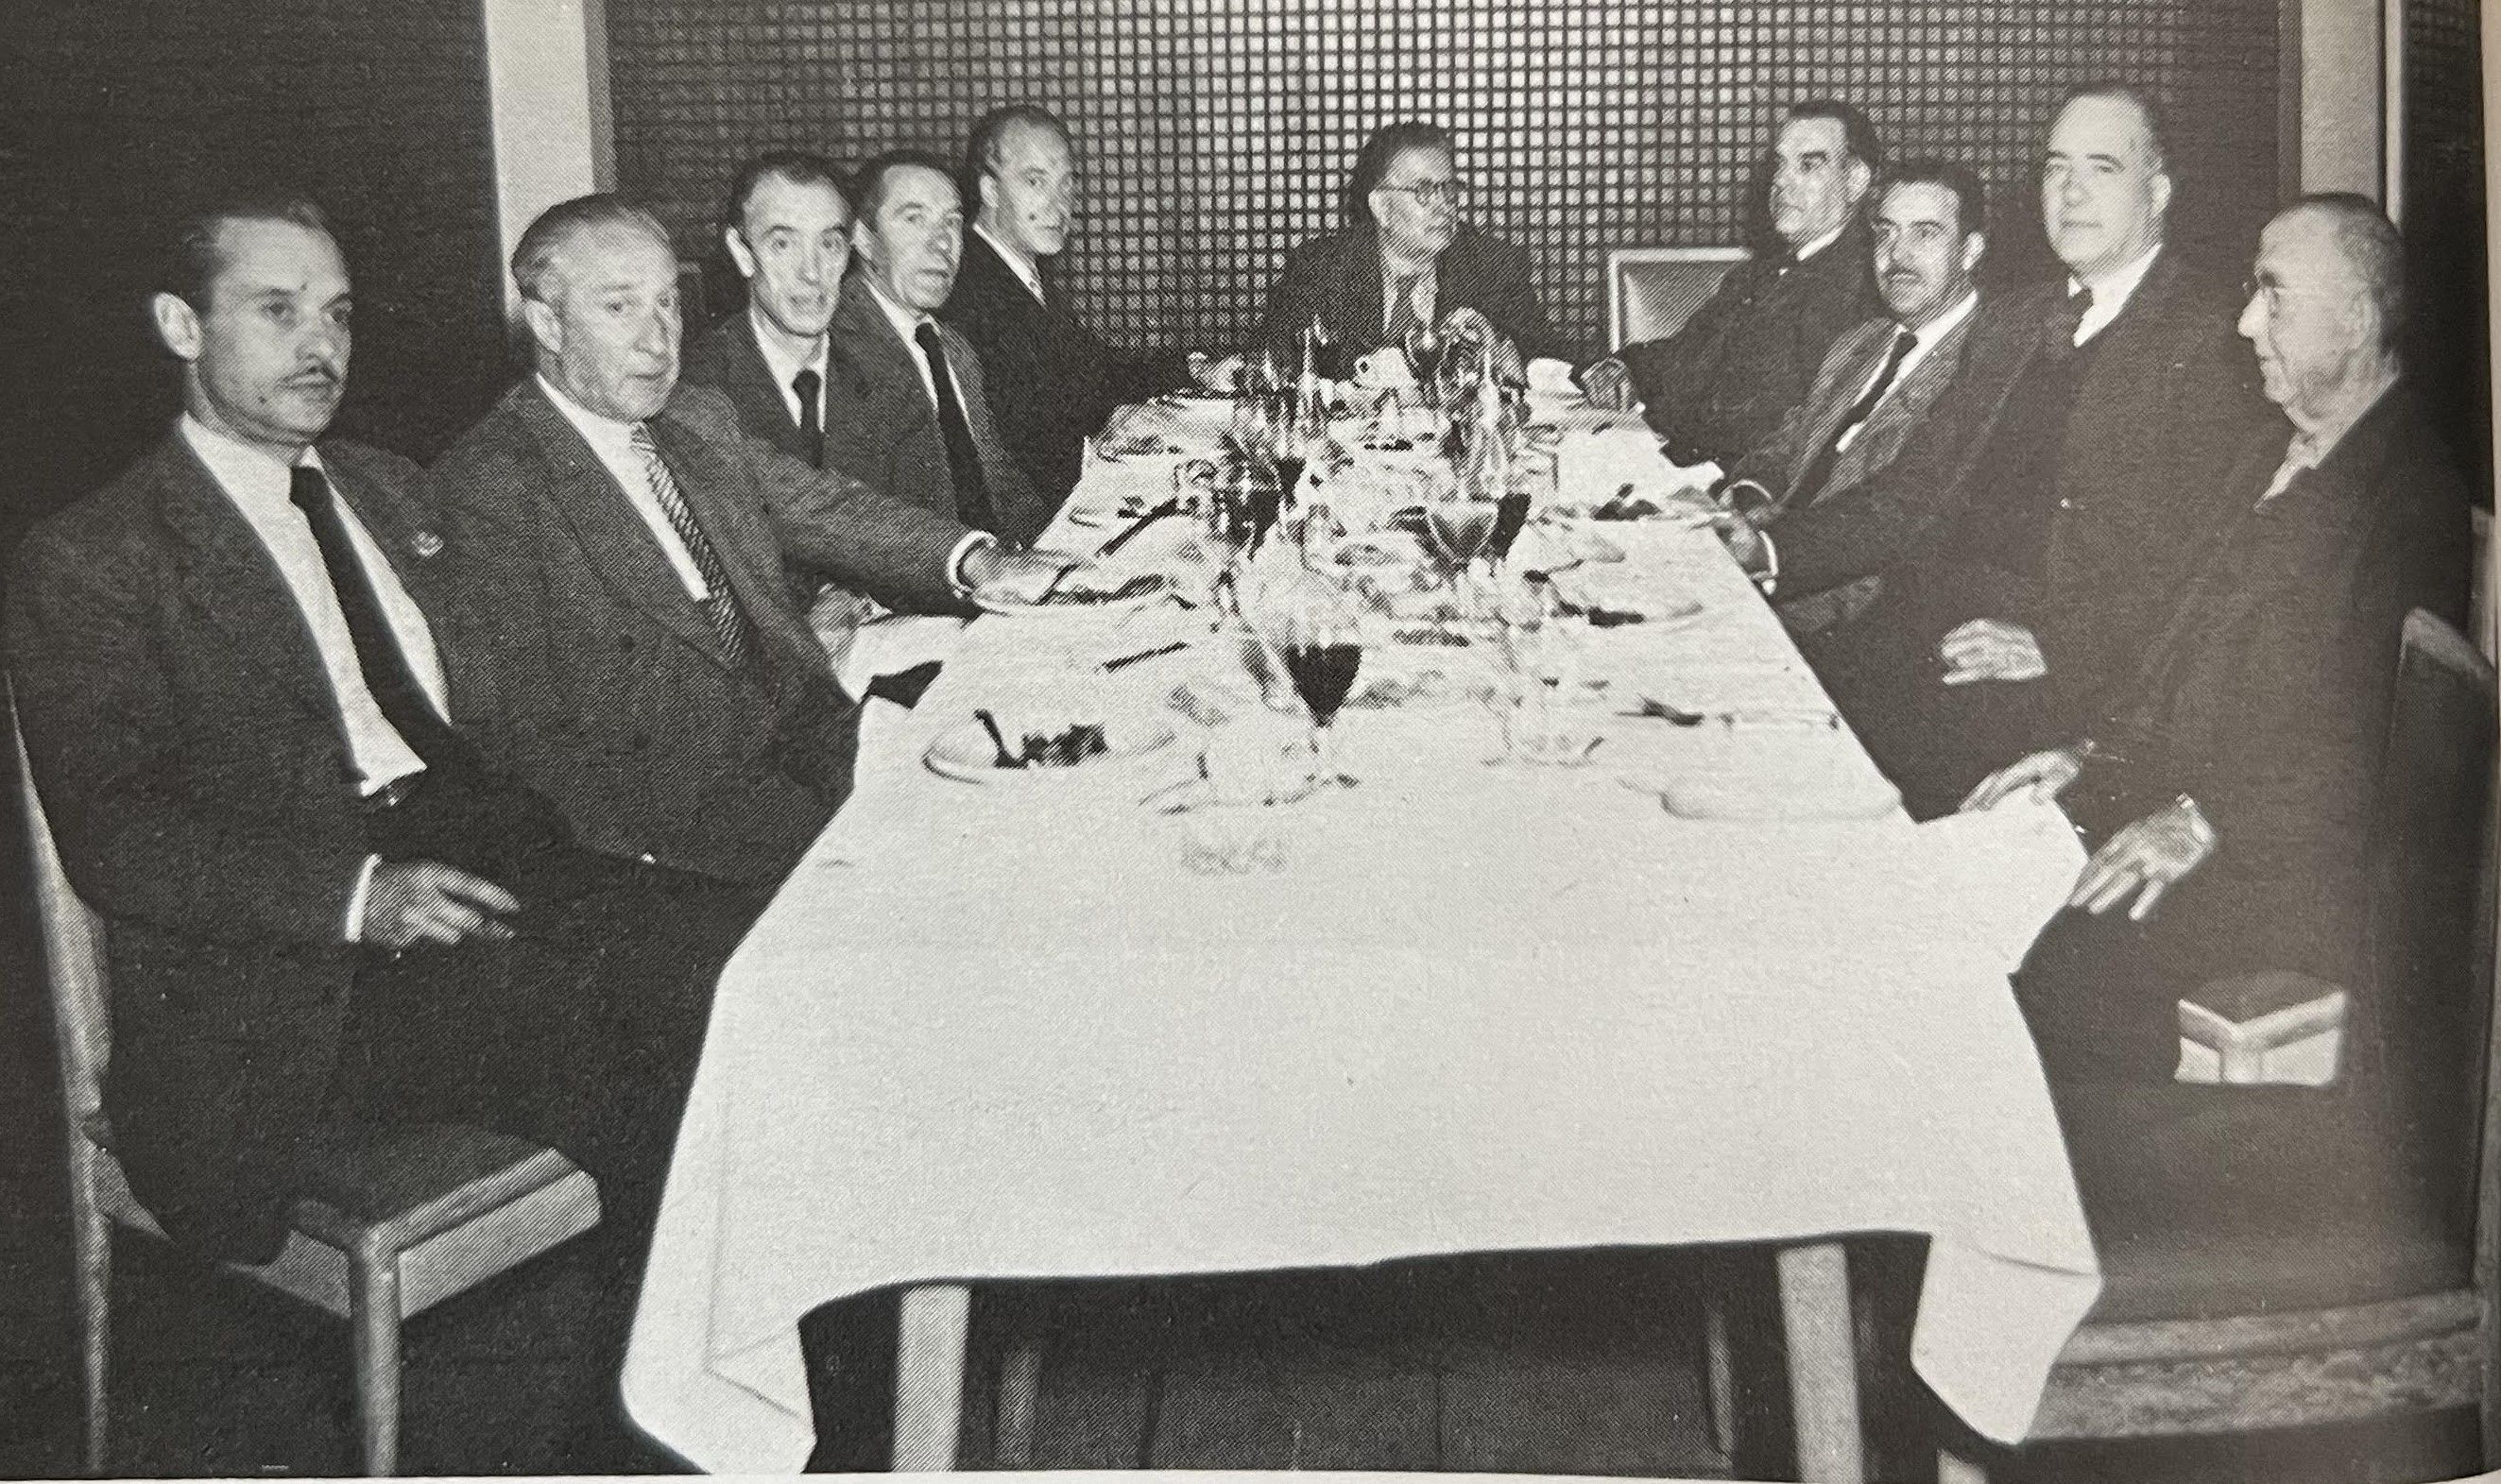 El president Tarradellas, l’estiu de 1954 a Mèxic, amb alguns diputats catalans exiliats en aquell país